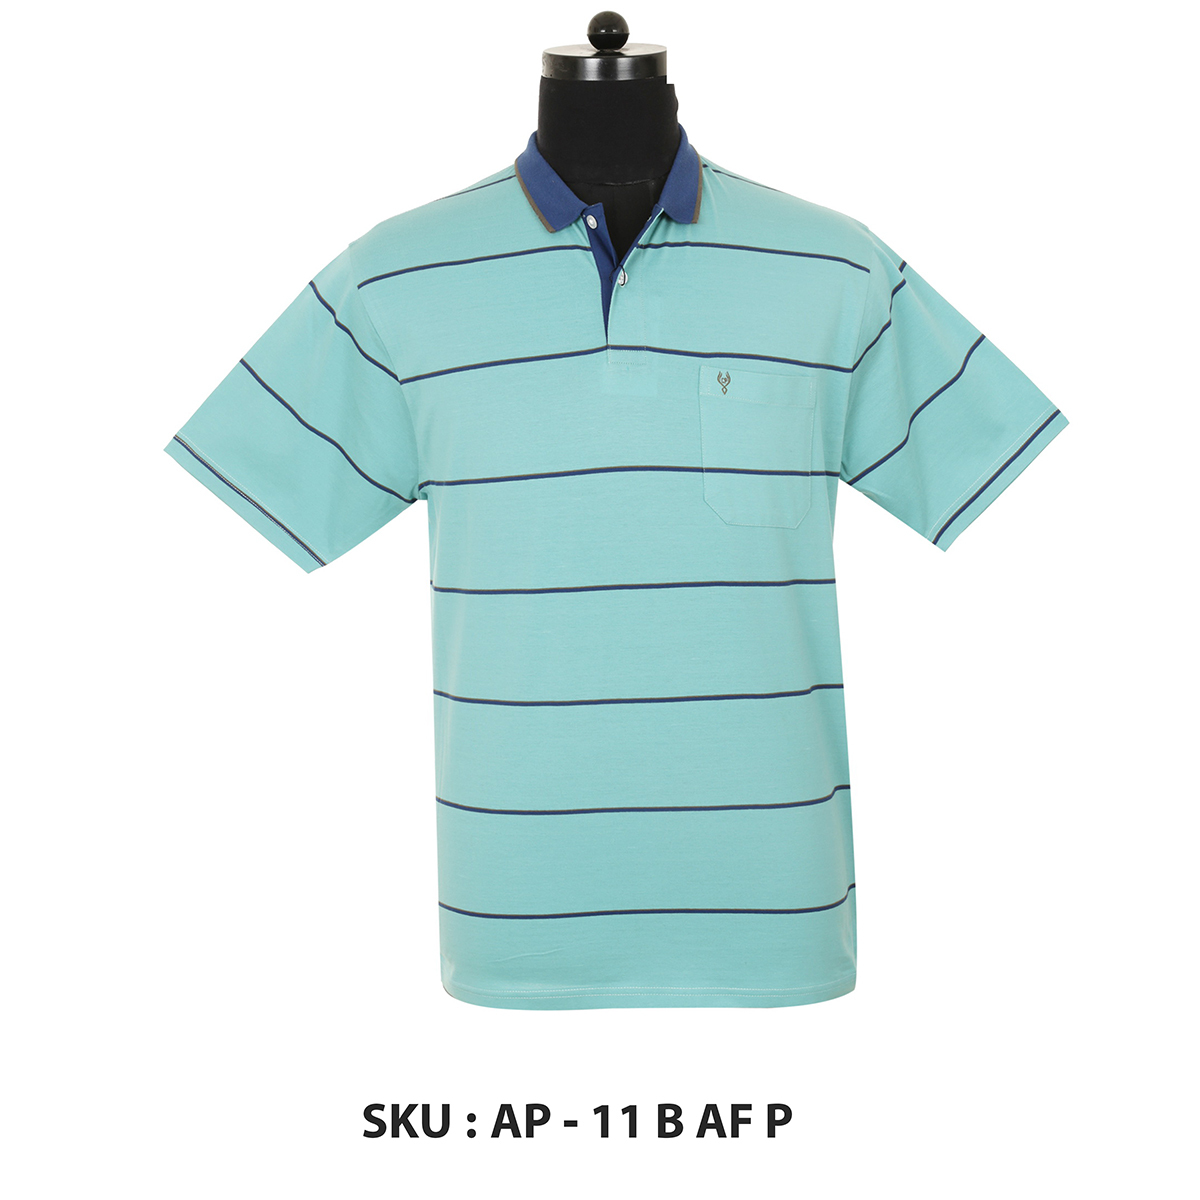 Classic Polo Mens T Shirt Ap - 11 B Af P Aqua XL